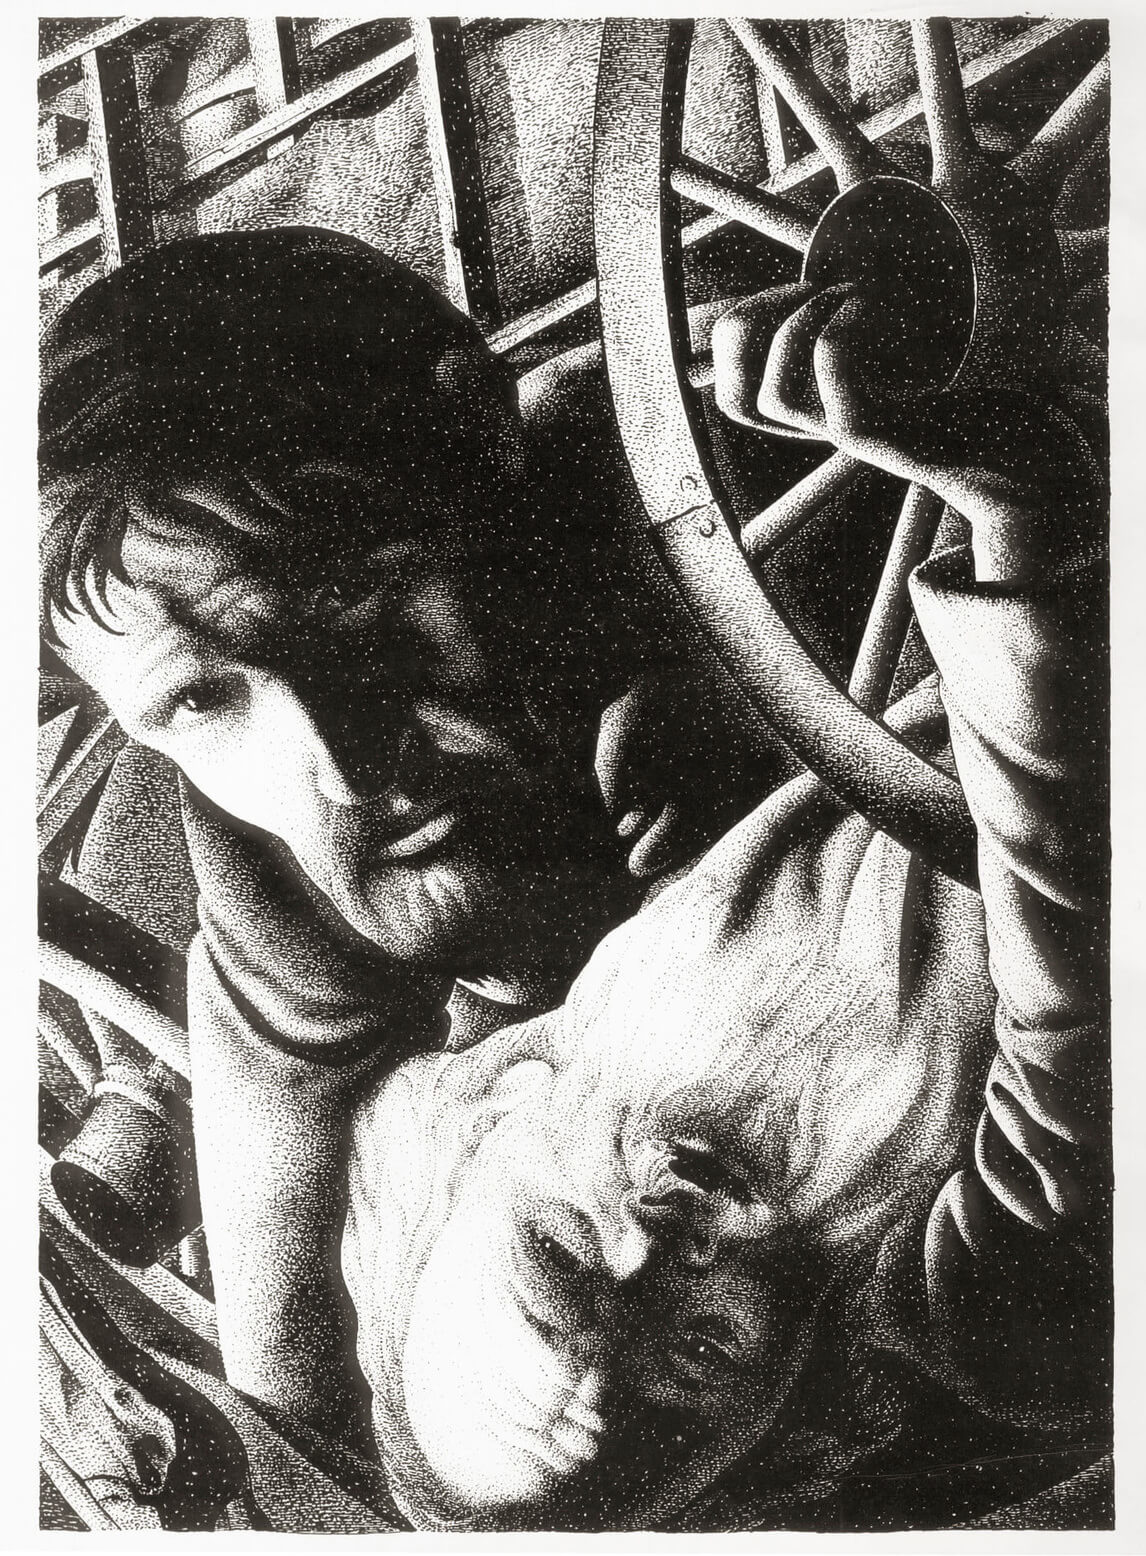 Les Misérables #2 (Wagon Wheel) (Les Misérables no 2 [roue de chariot]), 1936